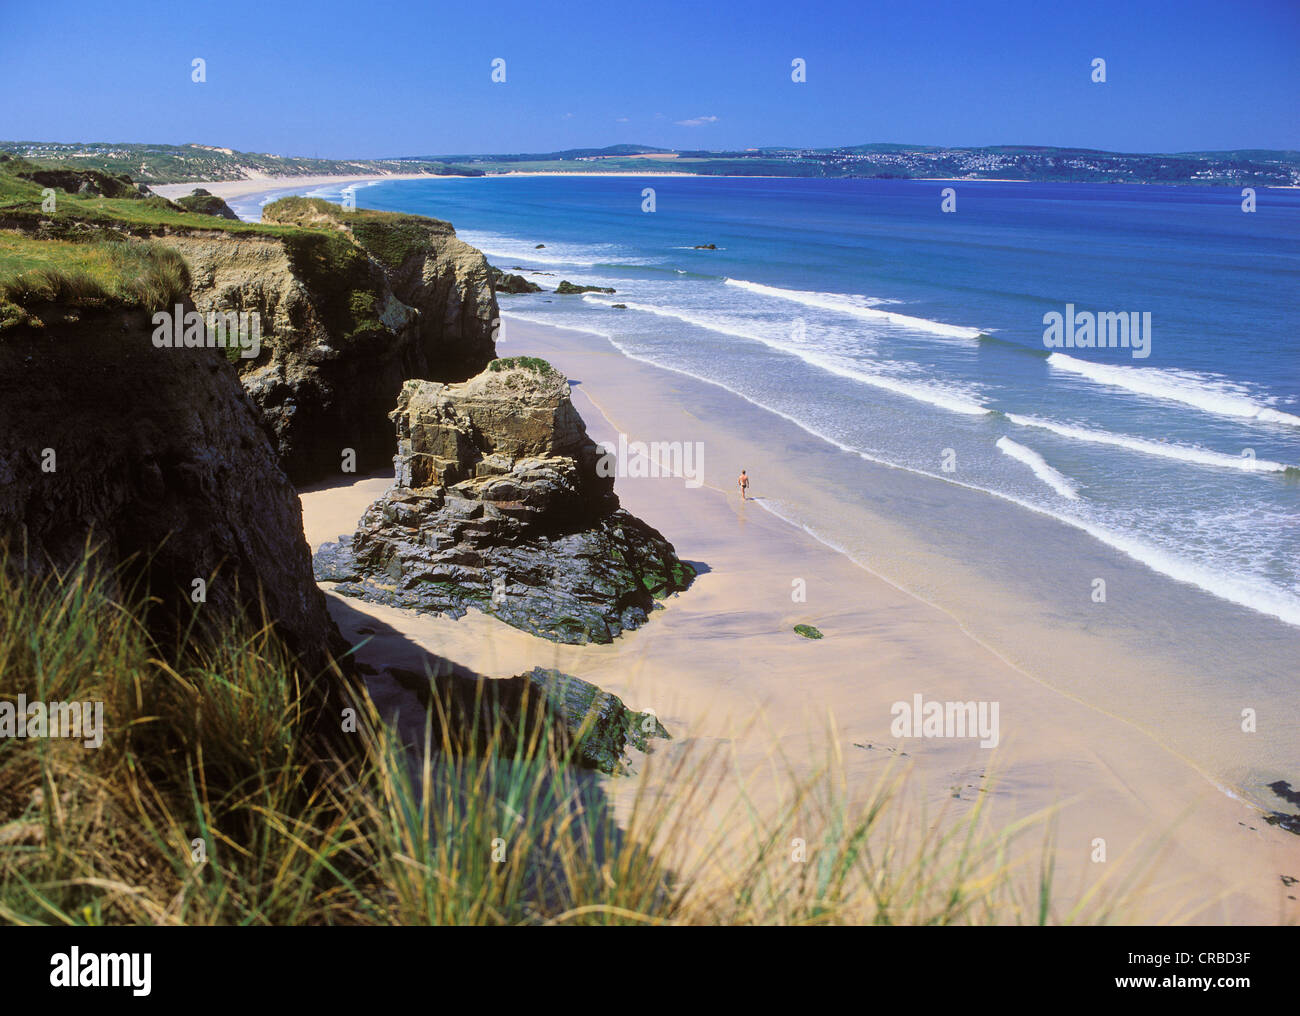 Plage, falaises, la baie de St Ives, Cornwall, Angleterre, Royaume-Uni, Europe Banque D'Images